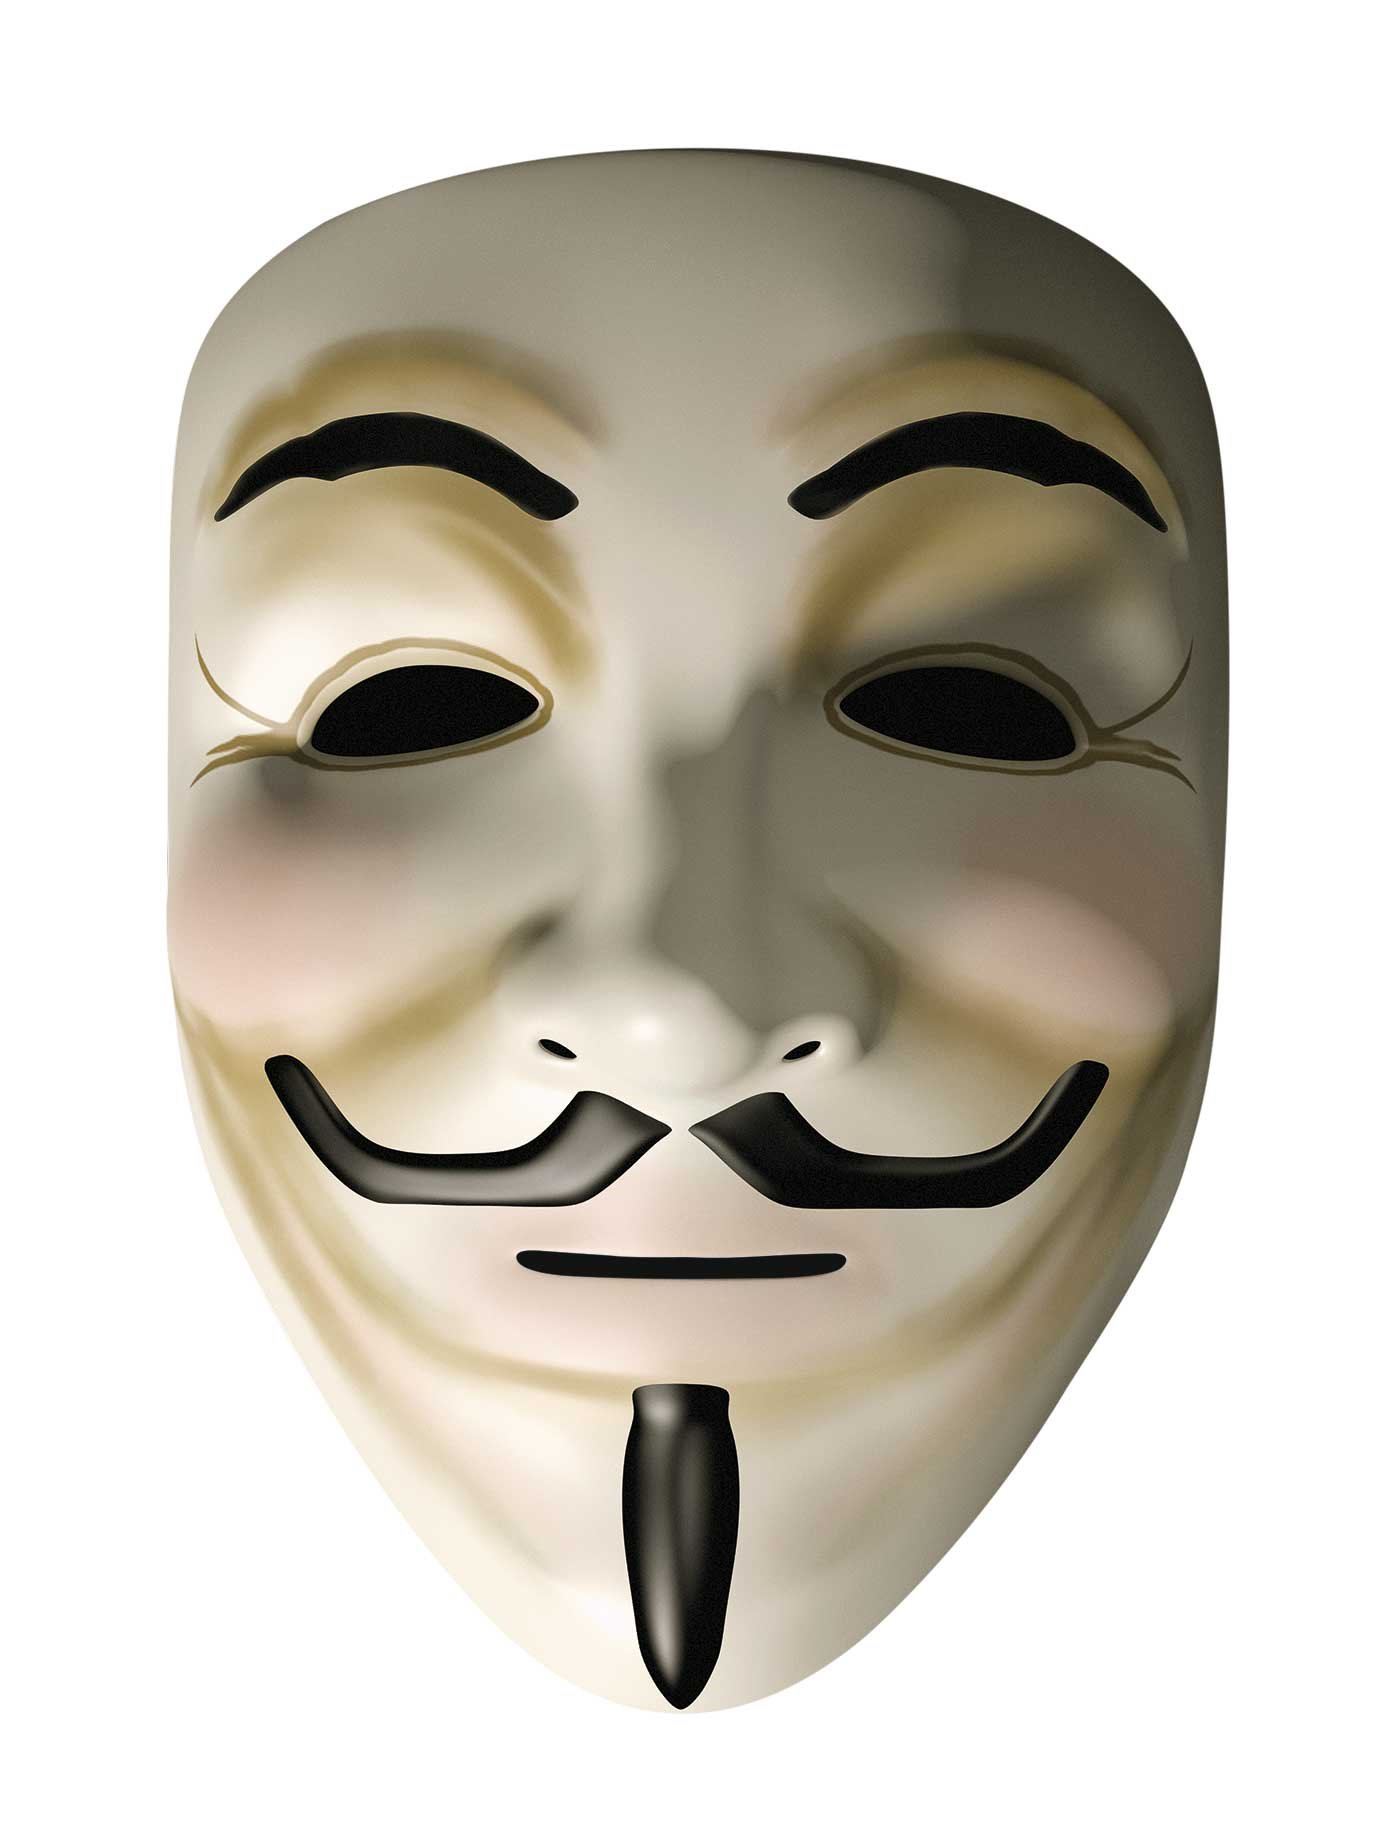 Como matrimonio Beber agua Guy Fawkes y el origen de la máscara de Anonymous - ¡No sabes nada!